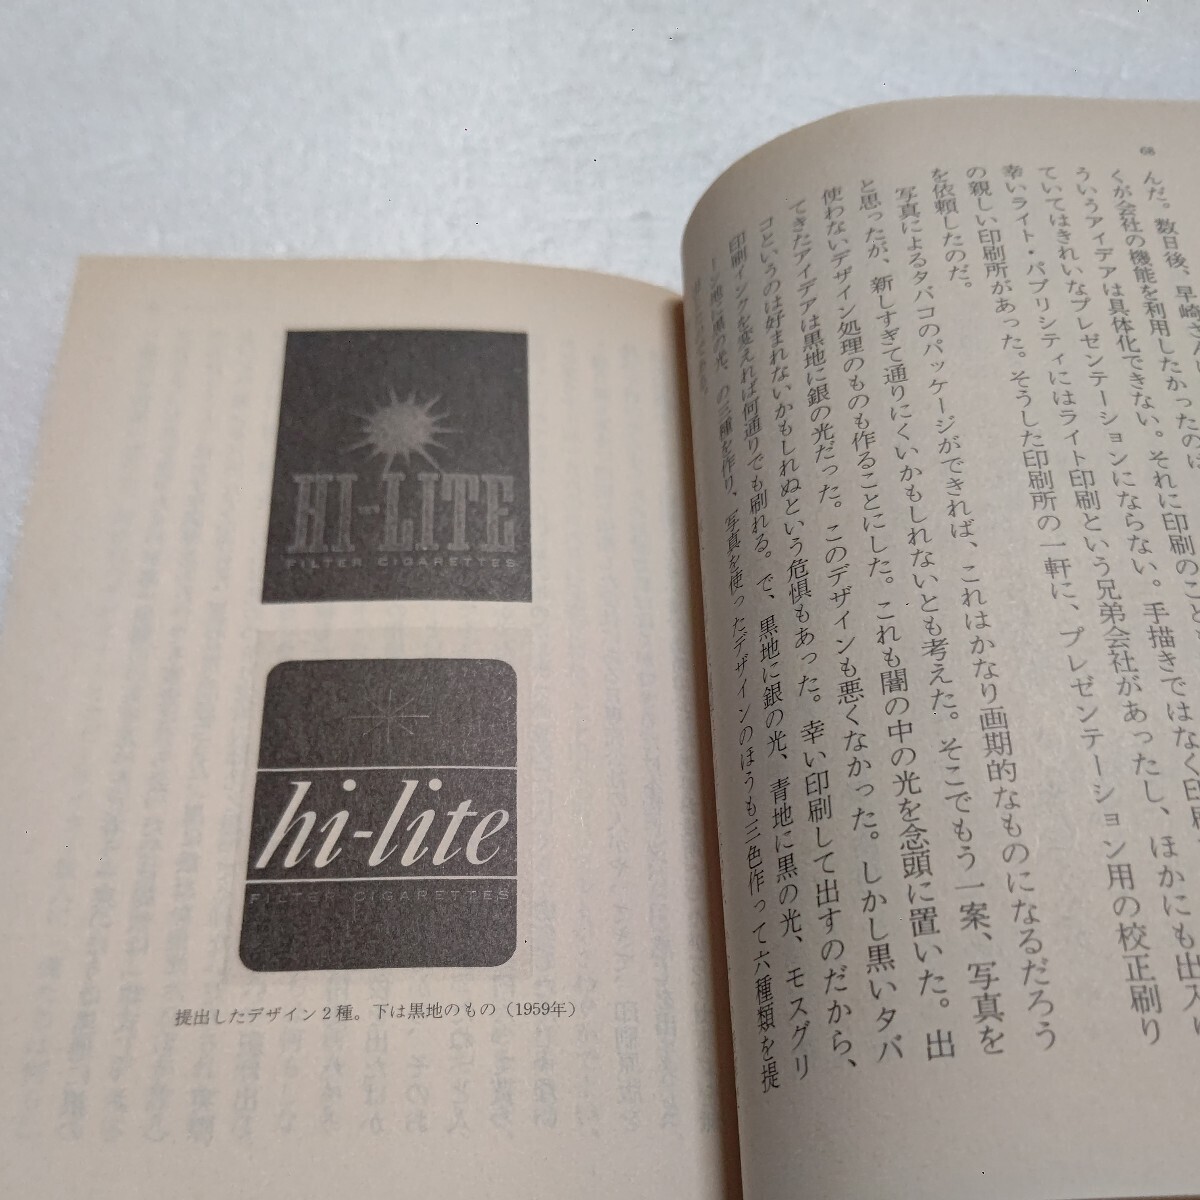 銀座界隈ドキドキの日々 和田誠 銀座が街の王様で僕はデザイナー一年生だった―修業時代を文章と懐かしいデザインで綴った六〇年代エッセイ